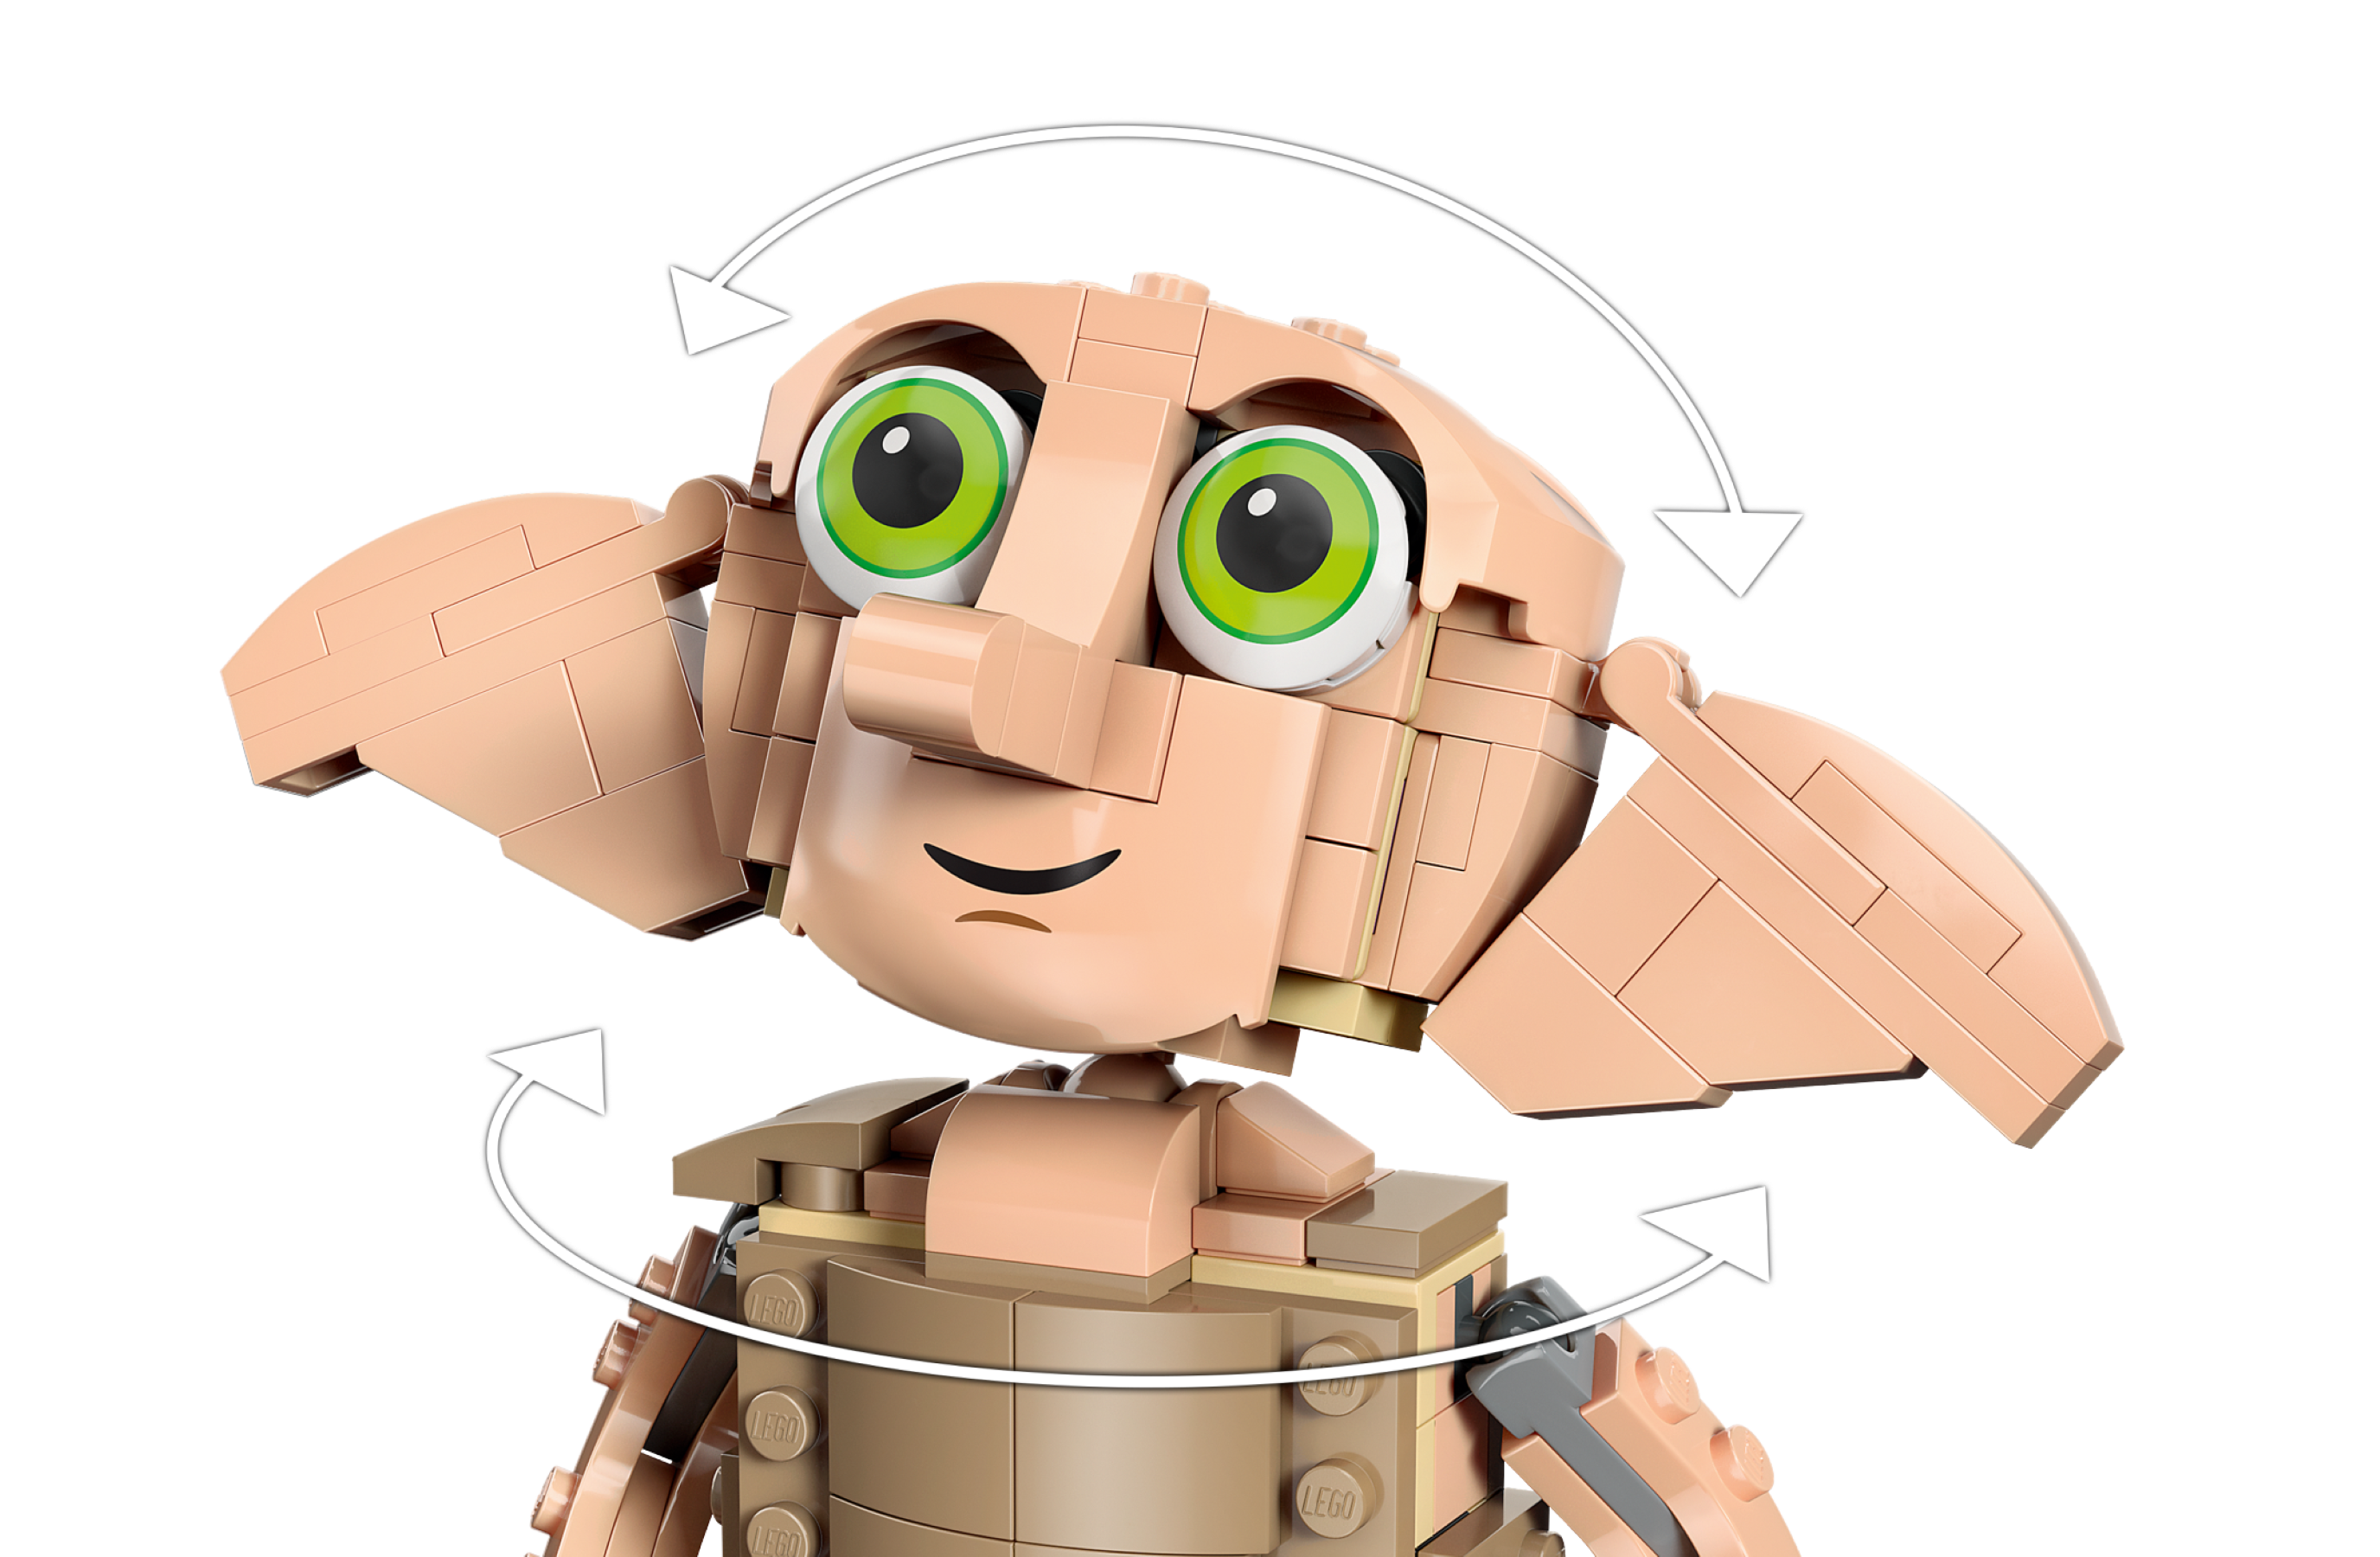 LEGO 76421 Harry Potter Dobby l'Elfe de Maison, Jouet de Figurine et  Accessoire de Décoration, Collection de Personnages & 21178 Minecraft Le  Refuge du Renard, Jouet de Construction de Maison : 